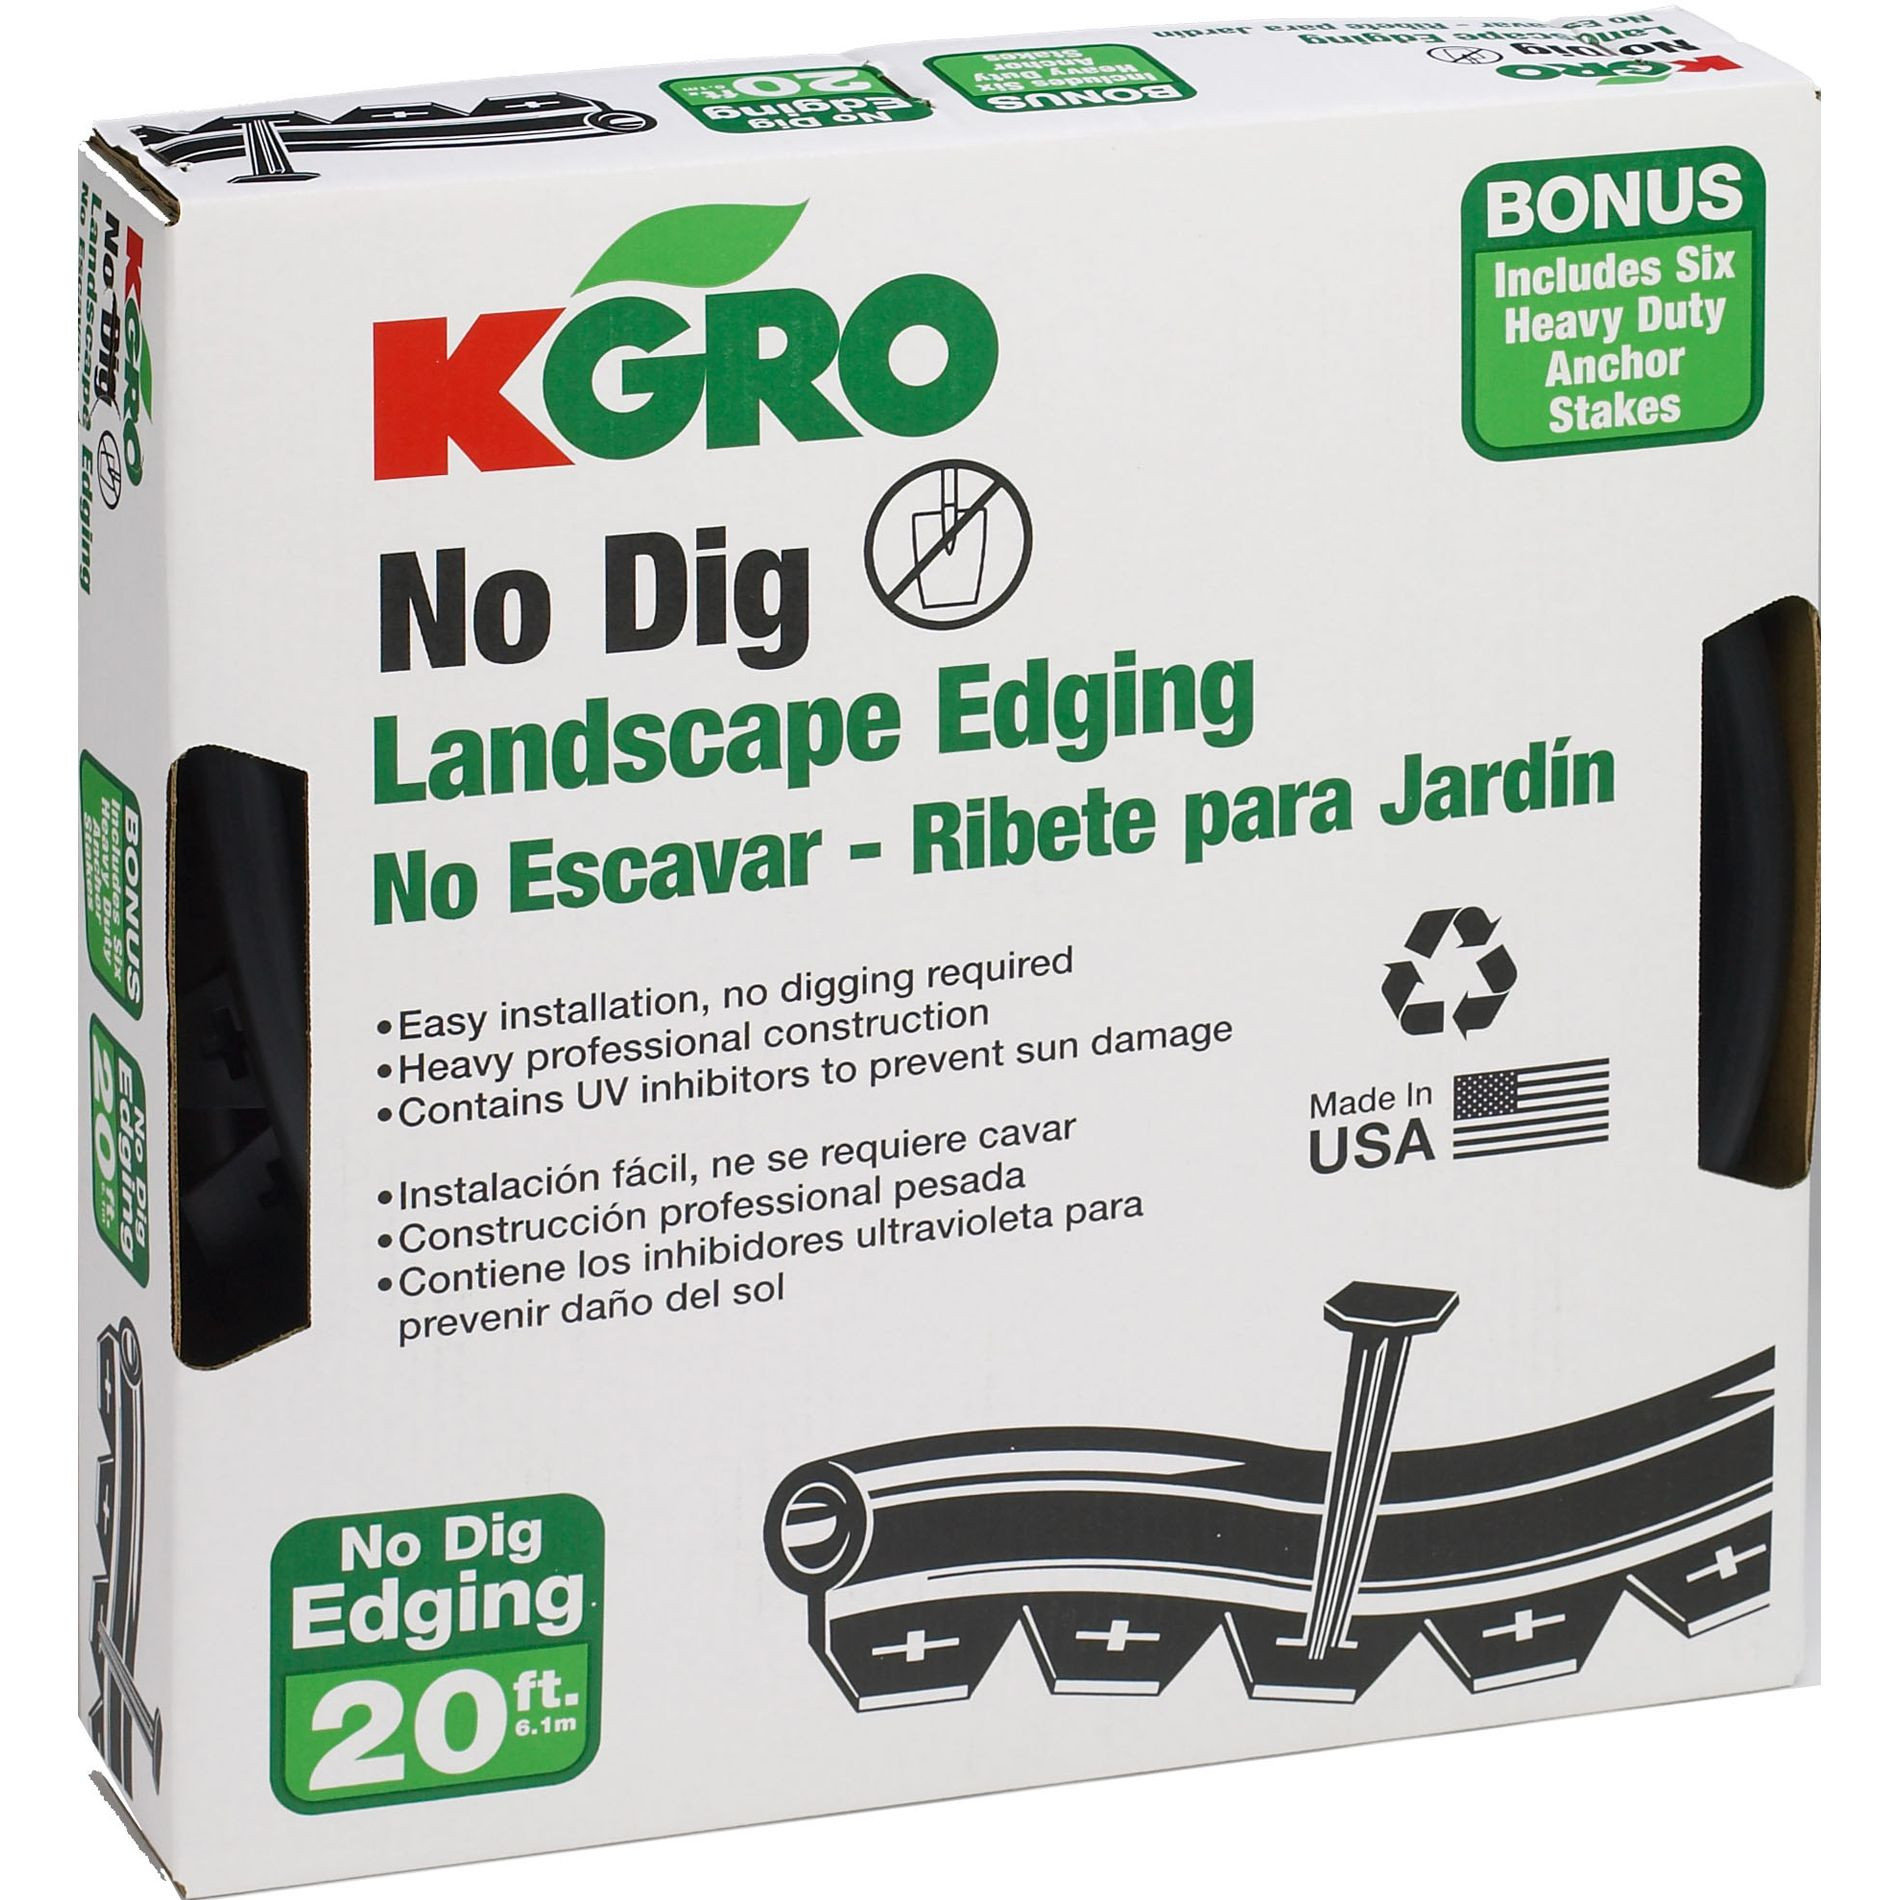 No Dig Landscape Edging
 Kgro No Dig 20 Landscape Edging Includes 6 Anchor